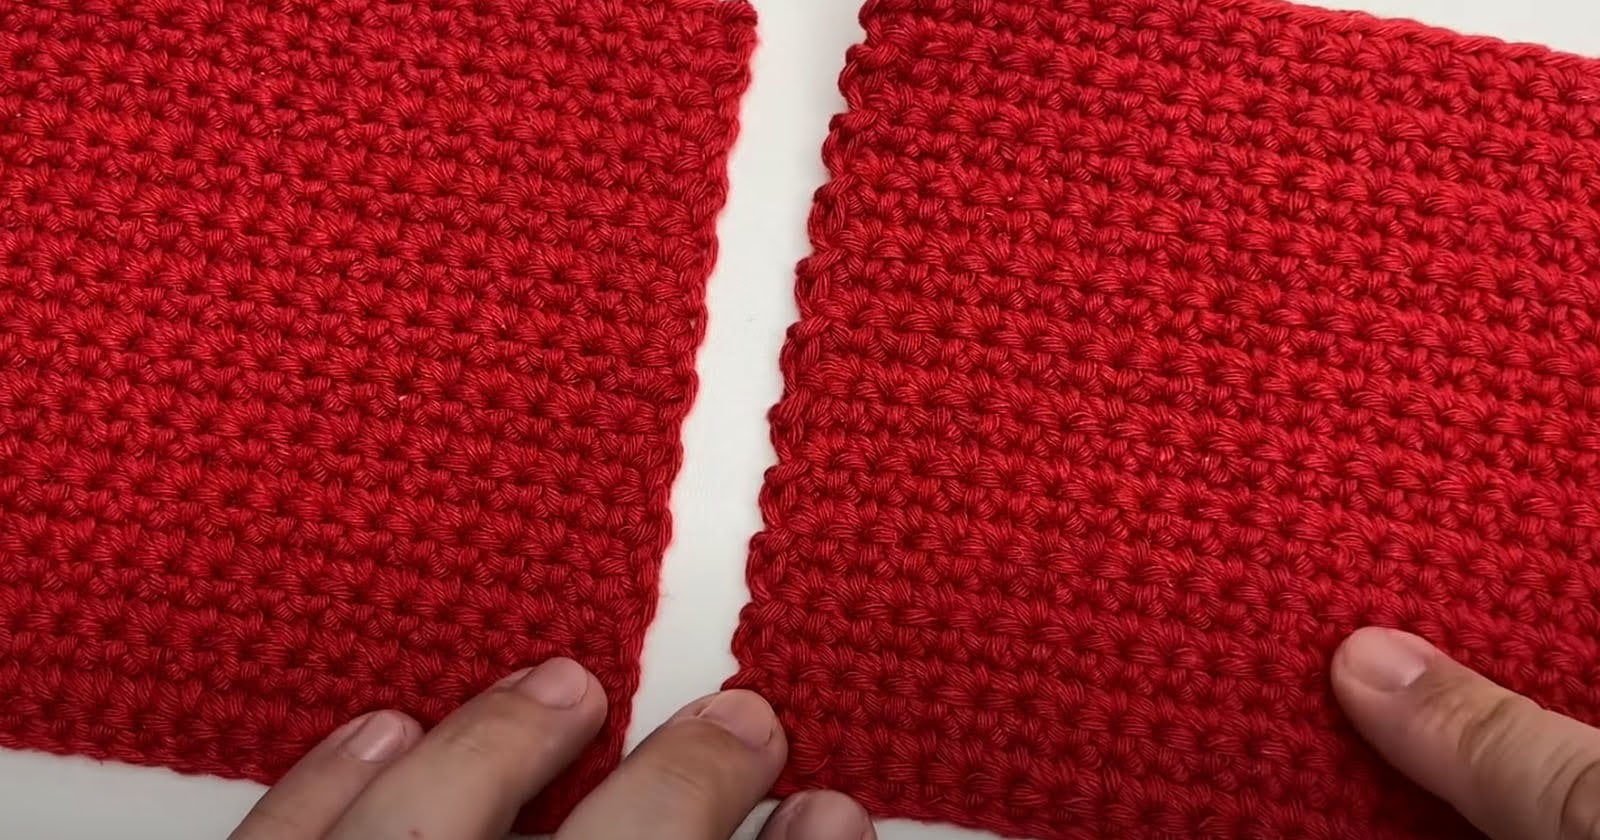 Transforme seu crochê com essa técnica infalível para trabalhos quadrados e retangulares